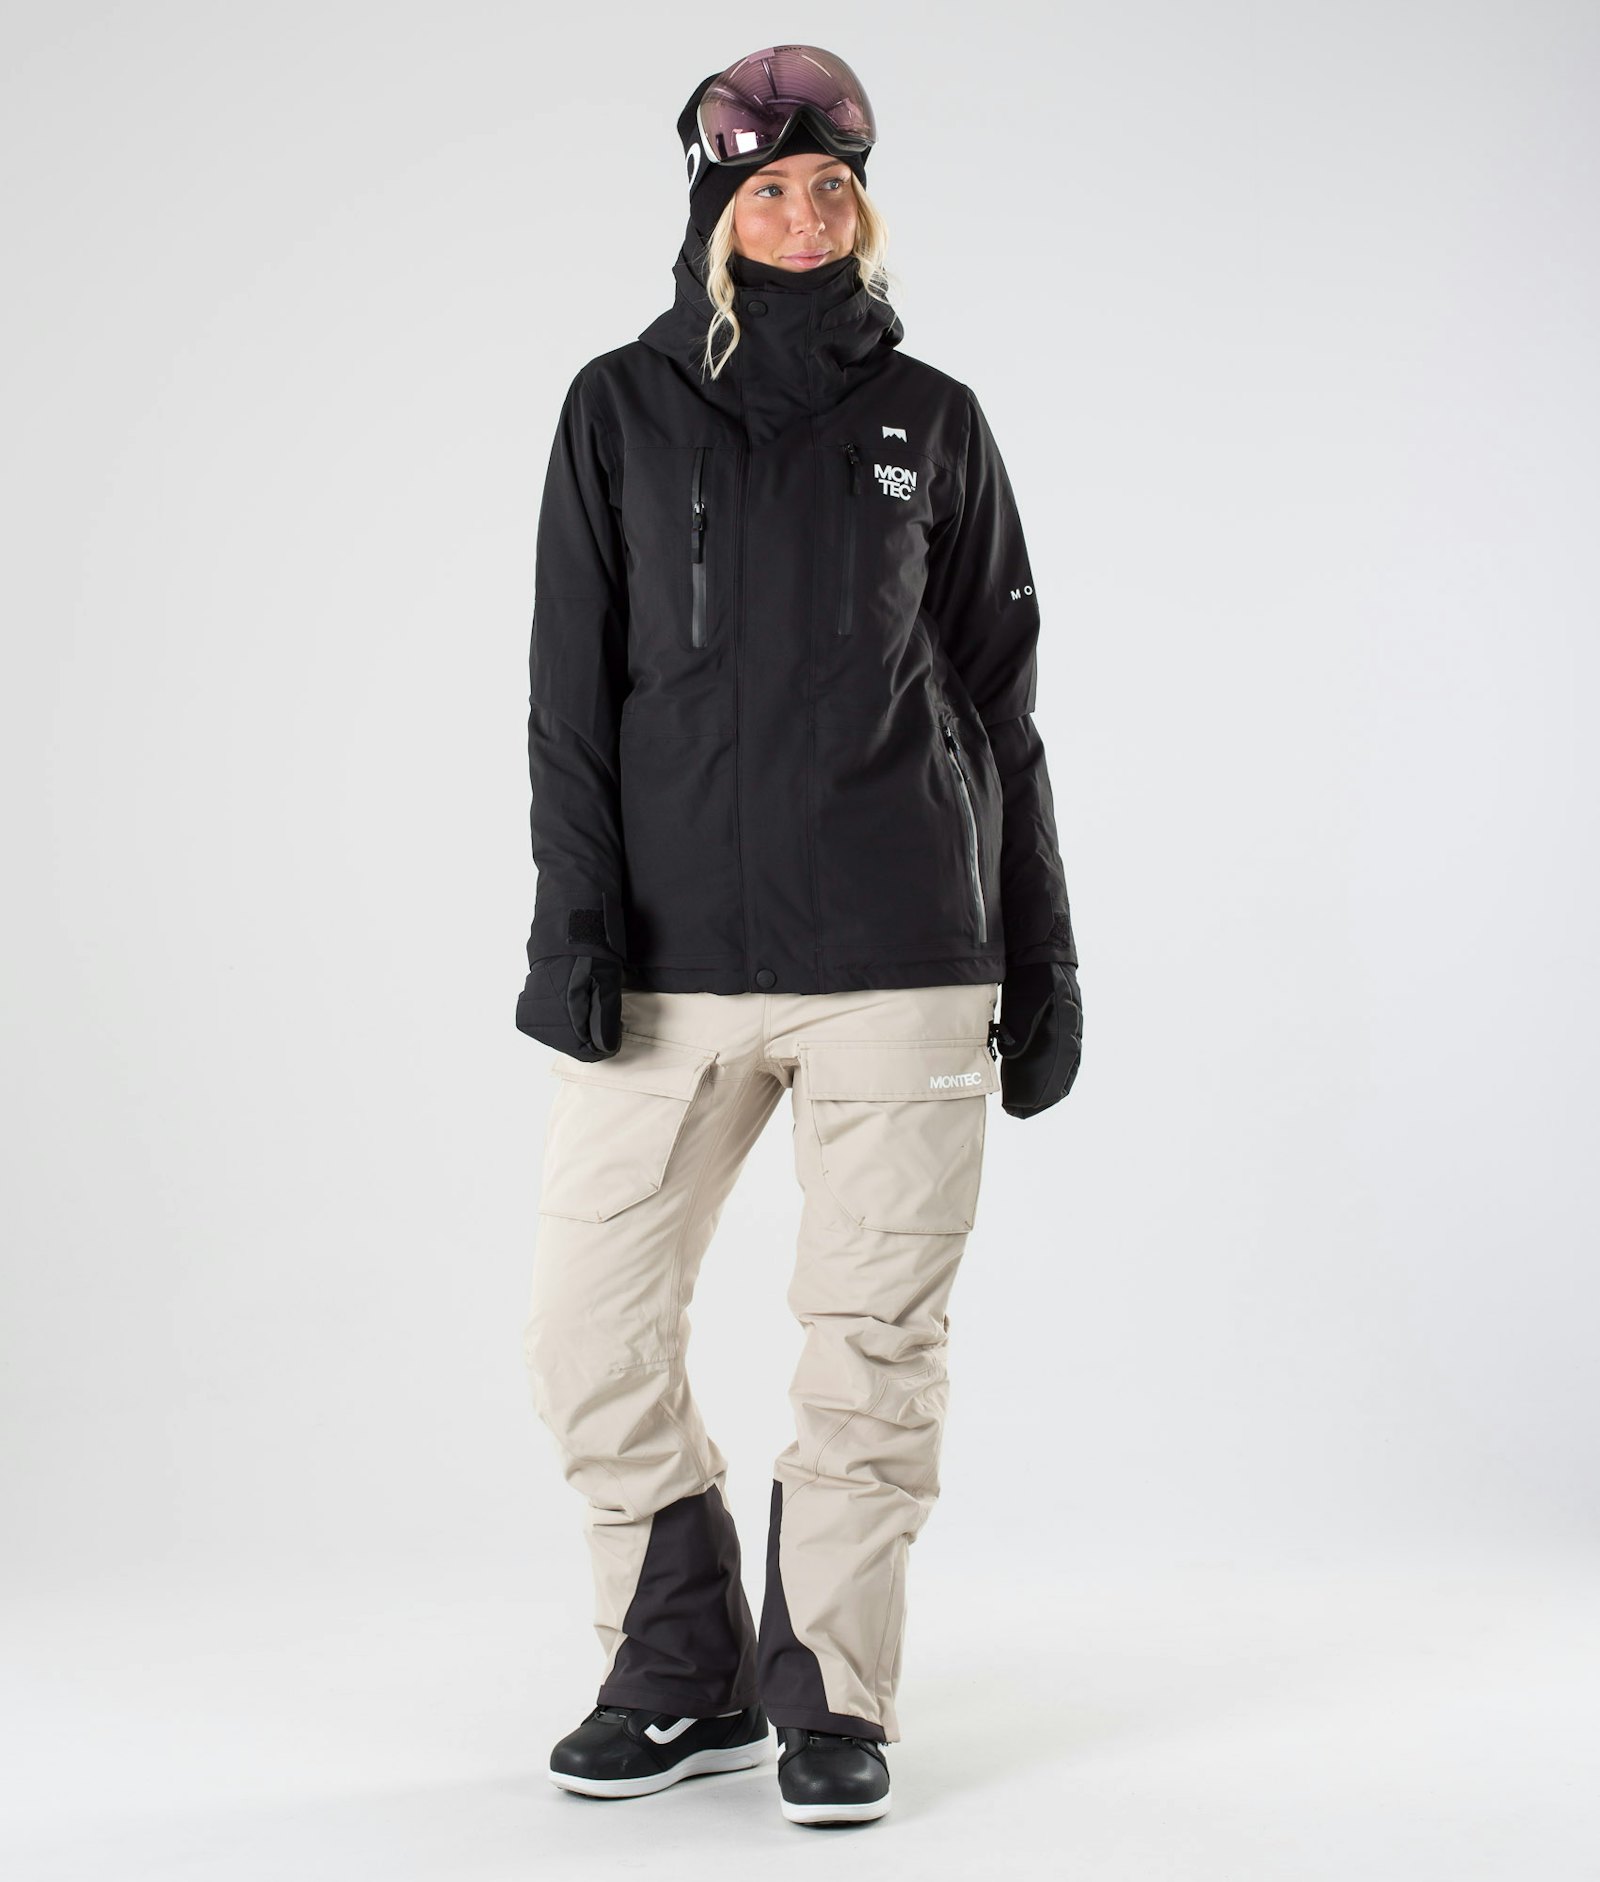 Fawk W 2019 Veste Snowboard Femme Black